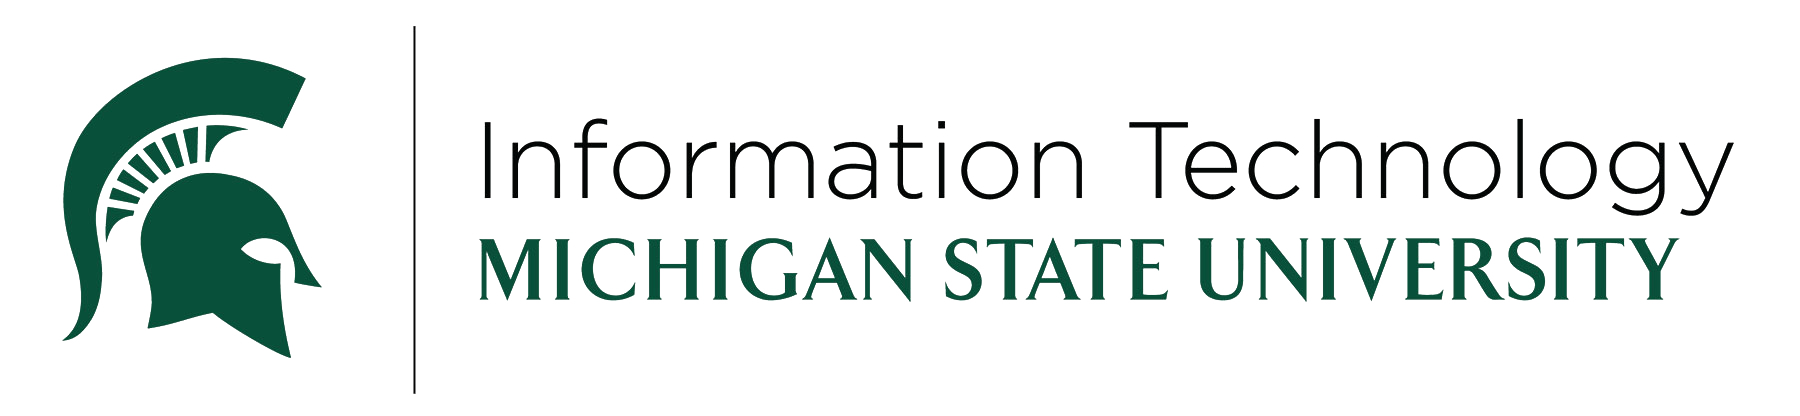 Information Technology, Michigan State University